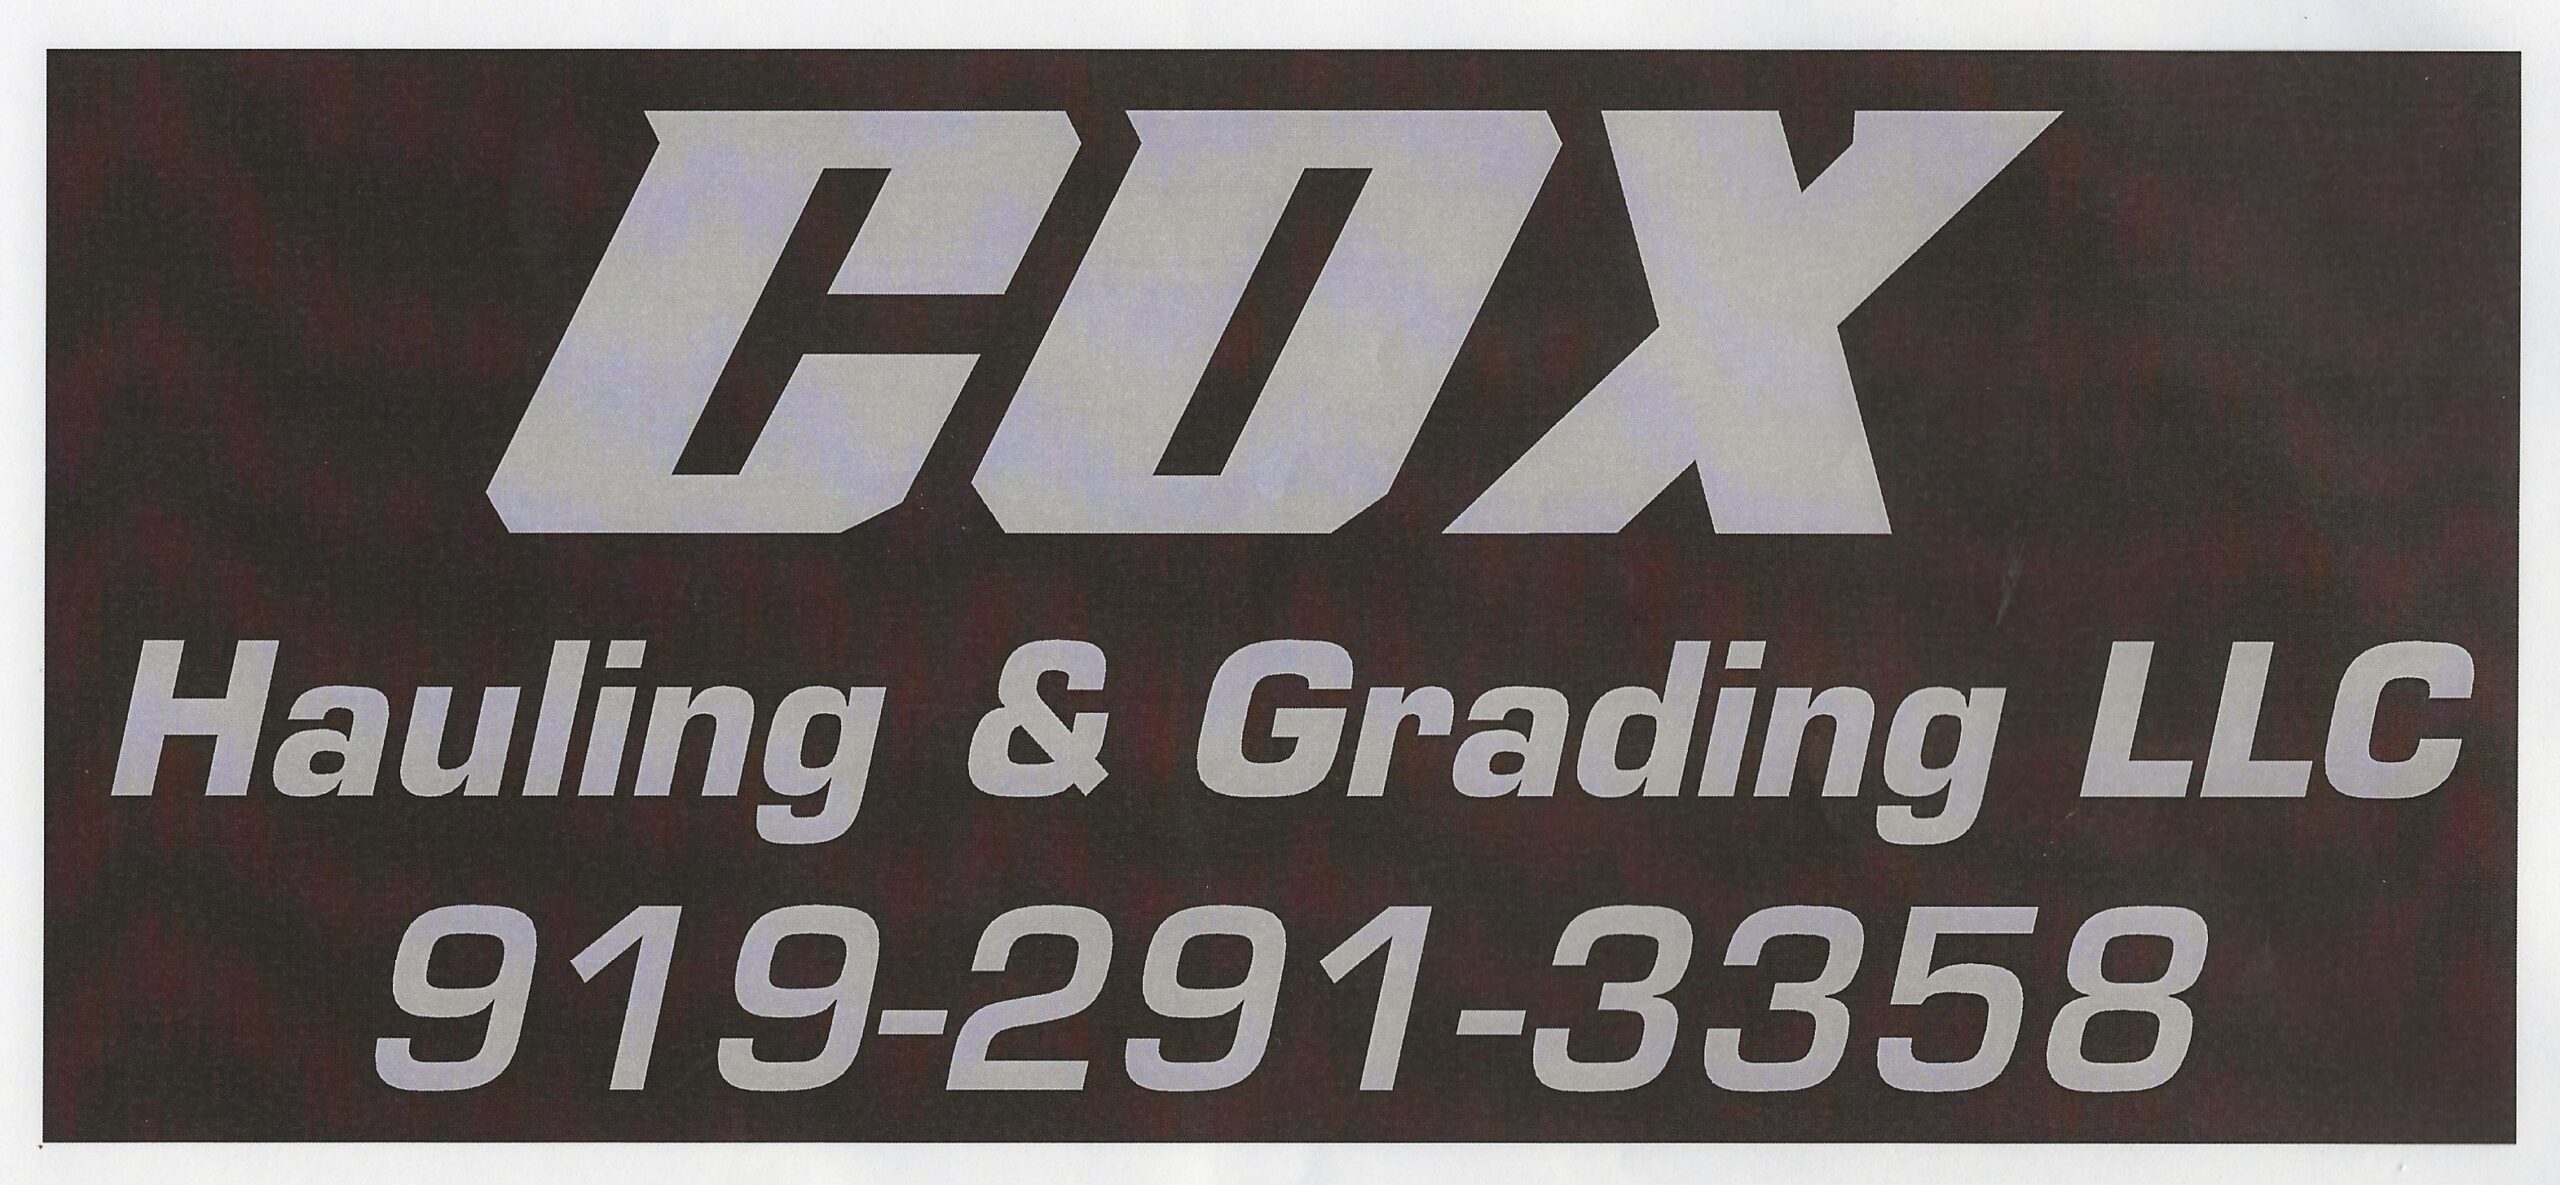 Cox Hauling & Grading, LLC